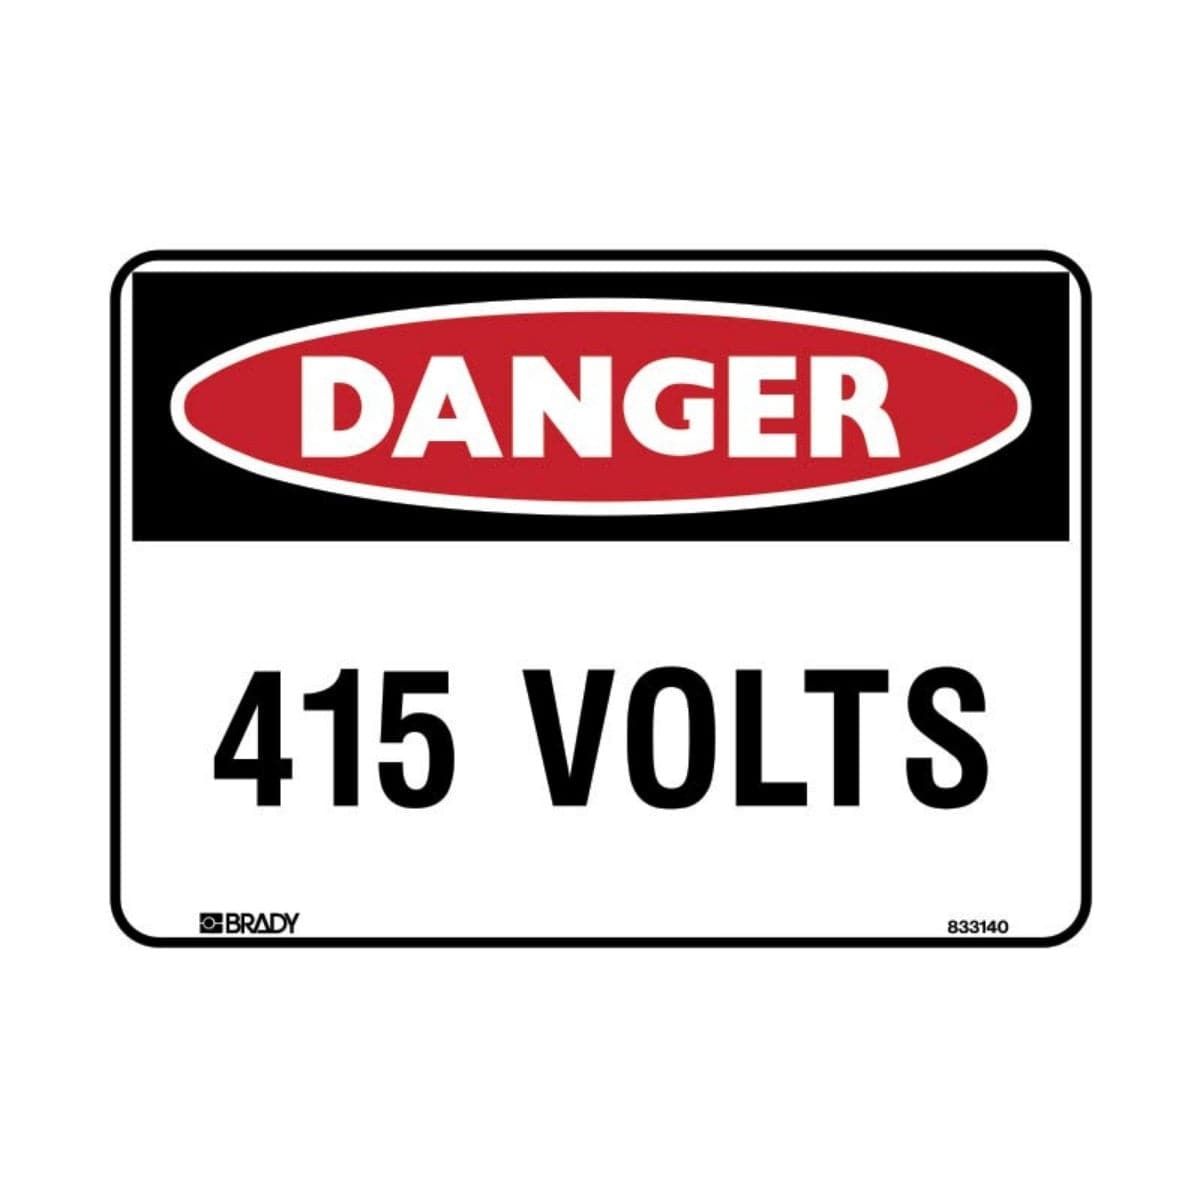 Danger 415 Volts